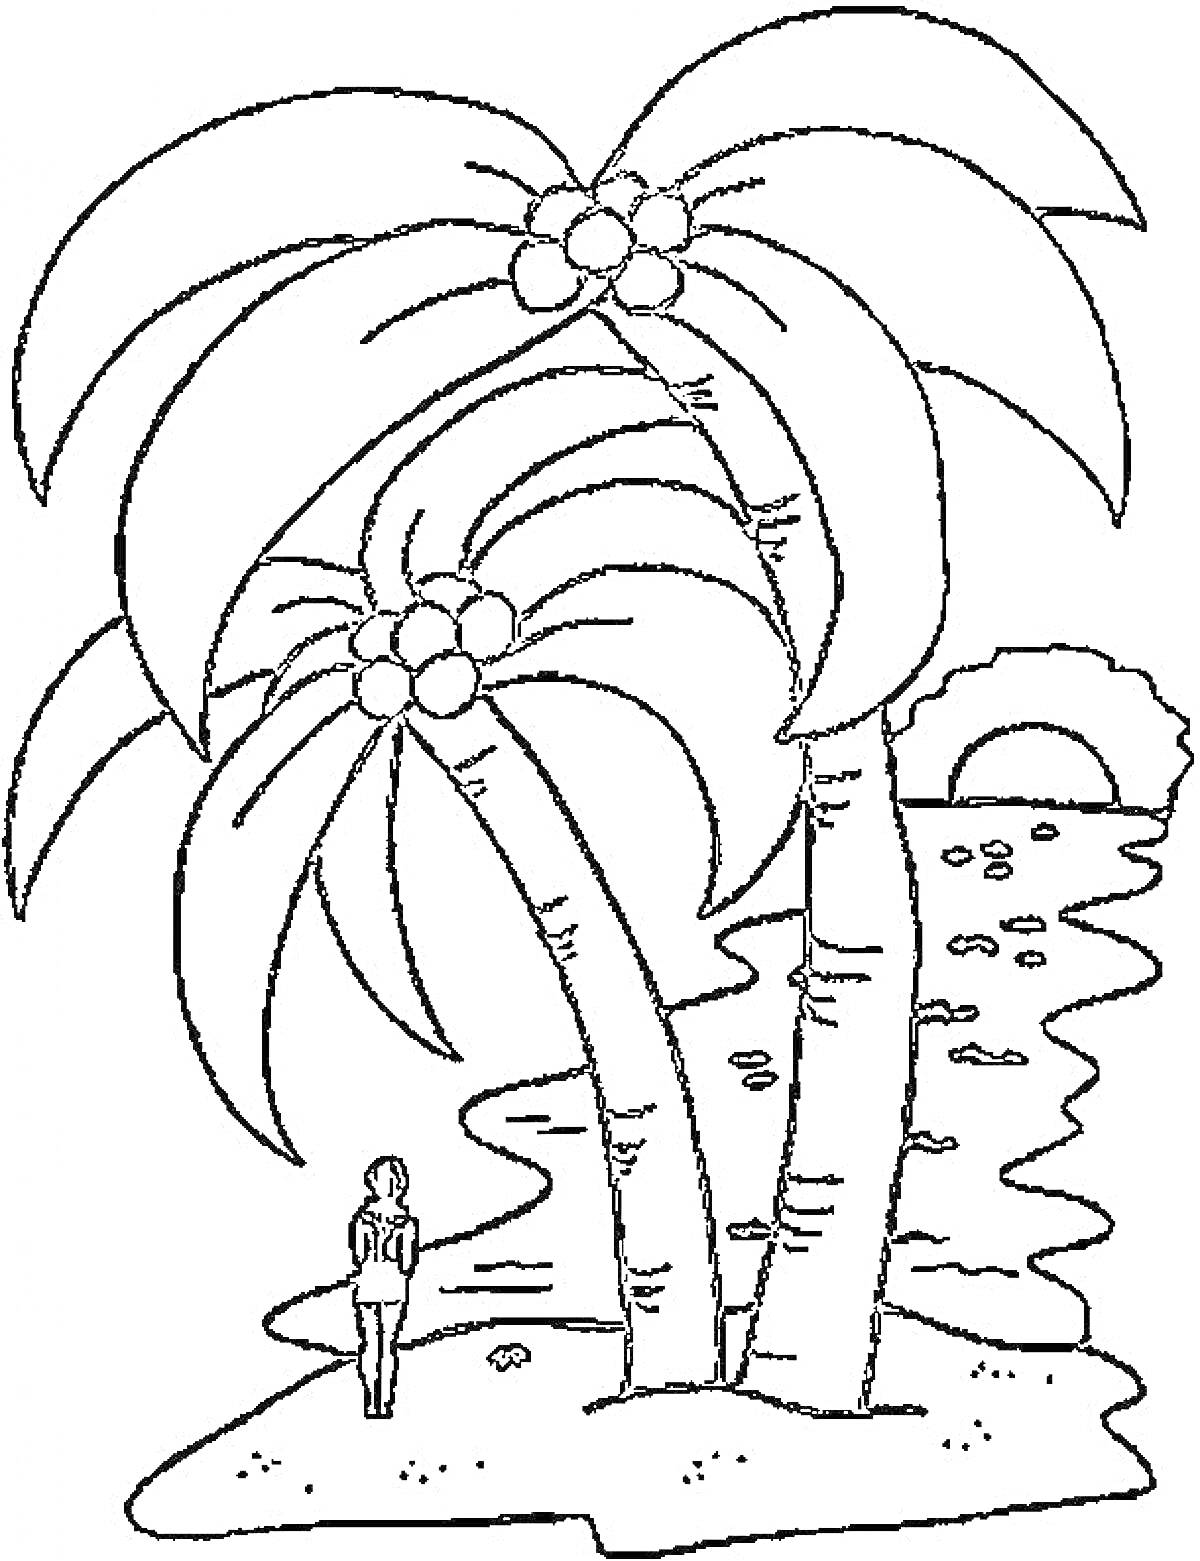 Пальмы на берегу с силуэтом человека и заходящим солнцем